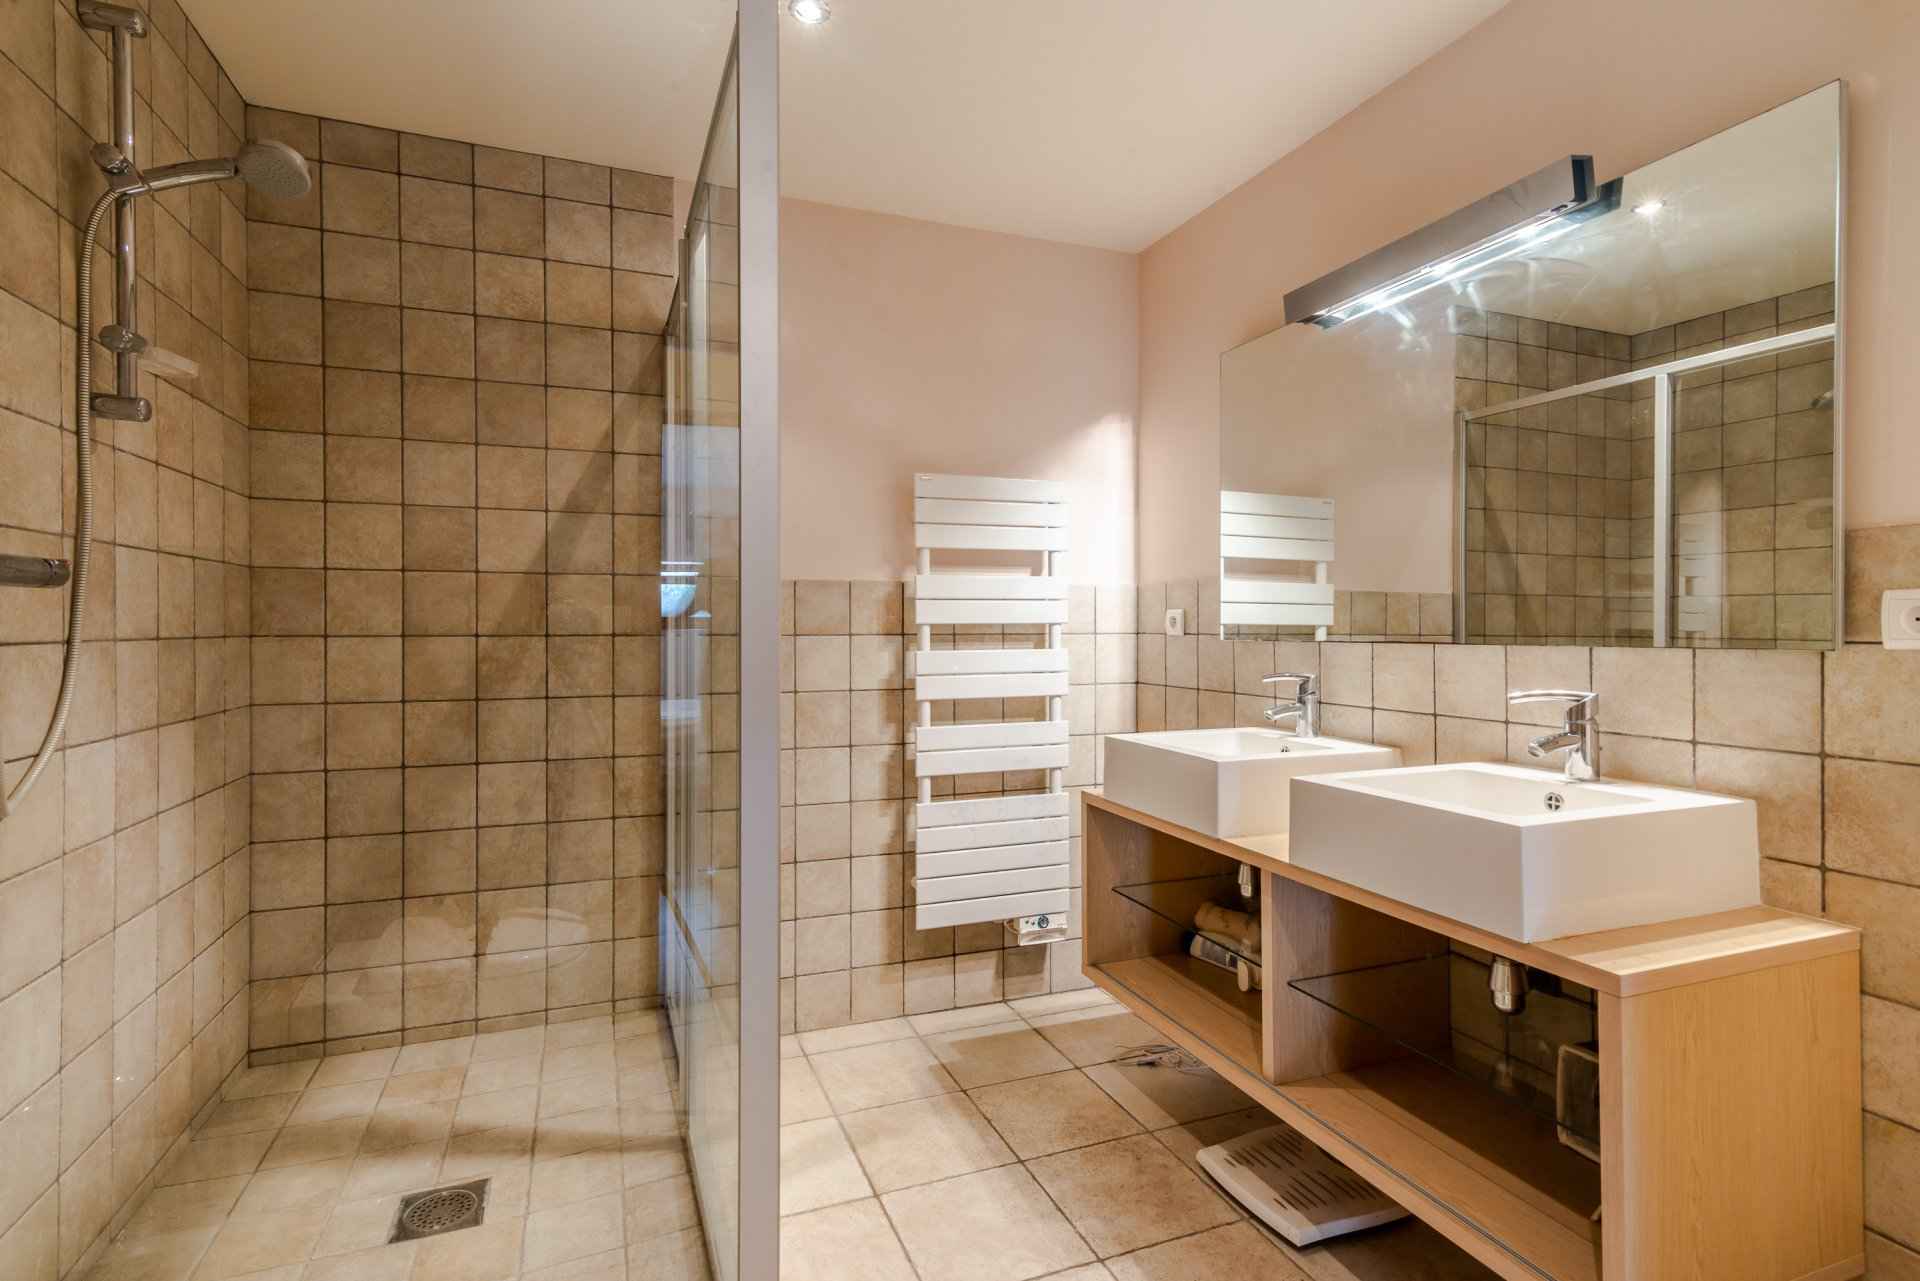 Maison / Villa - Barnes Léman, agence immobilière de prestige, salle de bains